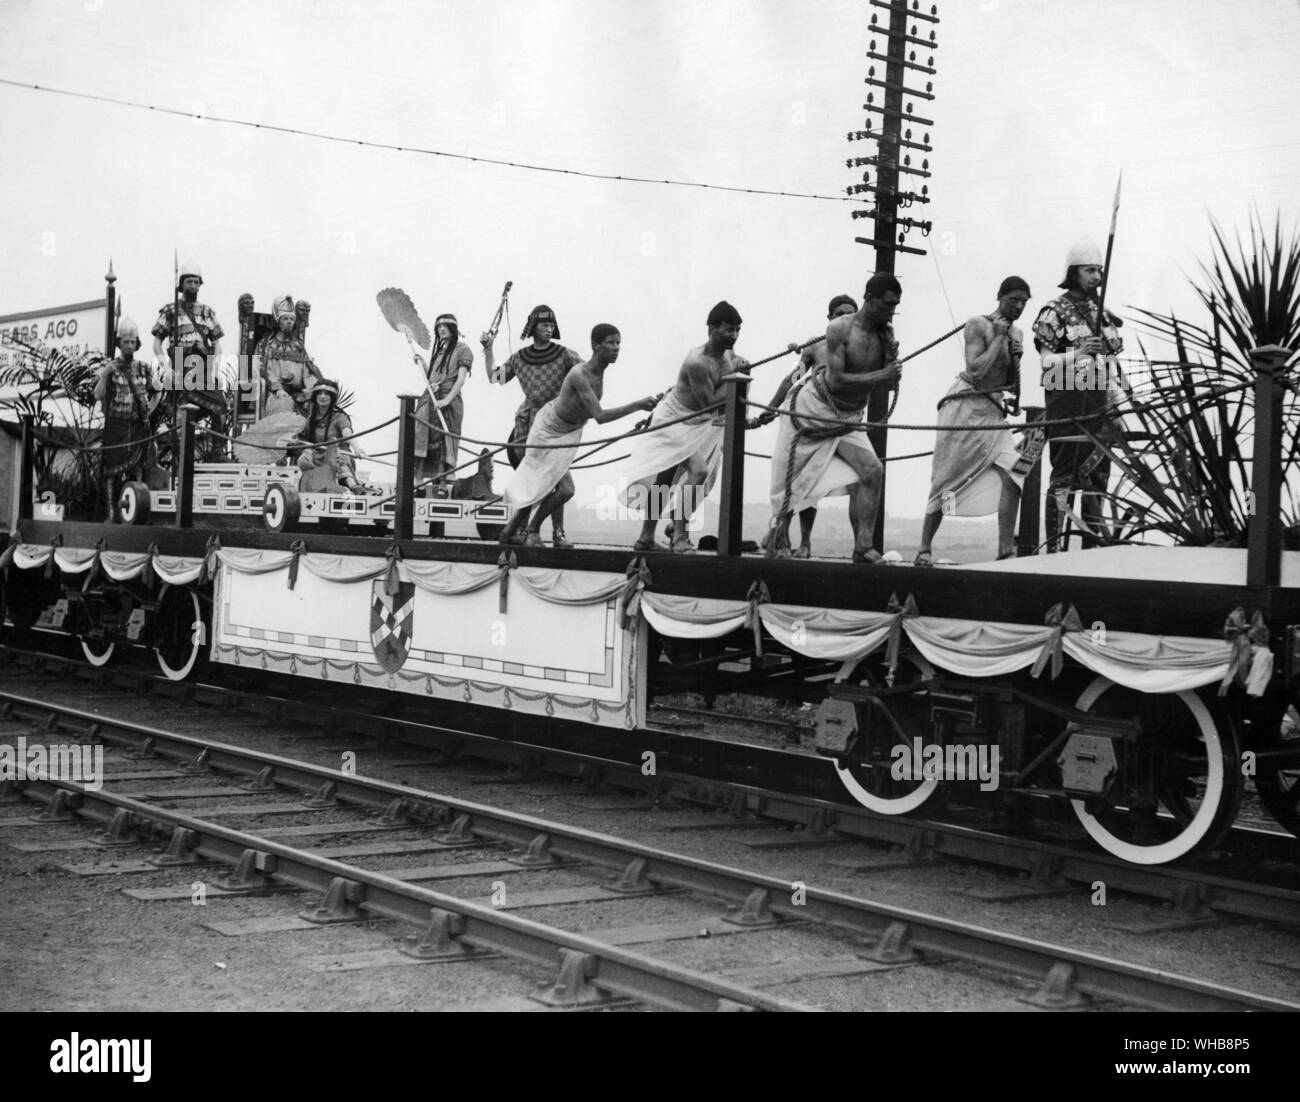 Vita quotidiana - uno dei tableaux nella processione l'evoluzione della ruota - Early Egyptian . 1925. Foto Stock